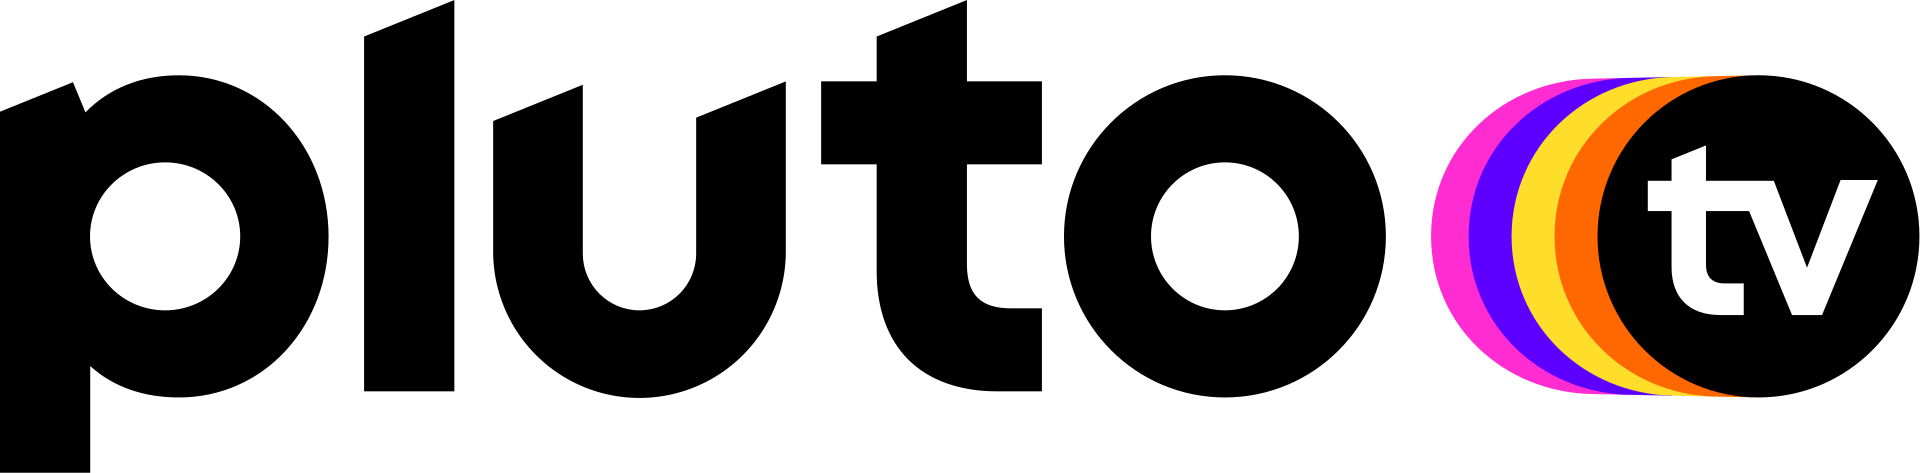 Pluto_TV_logo_2020.svg-1.png